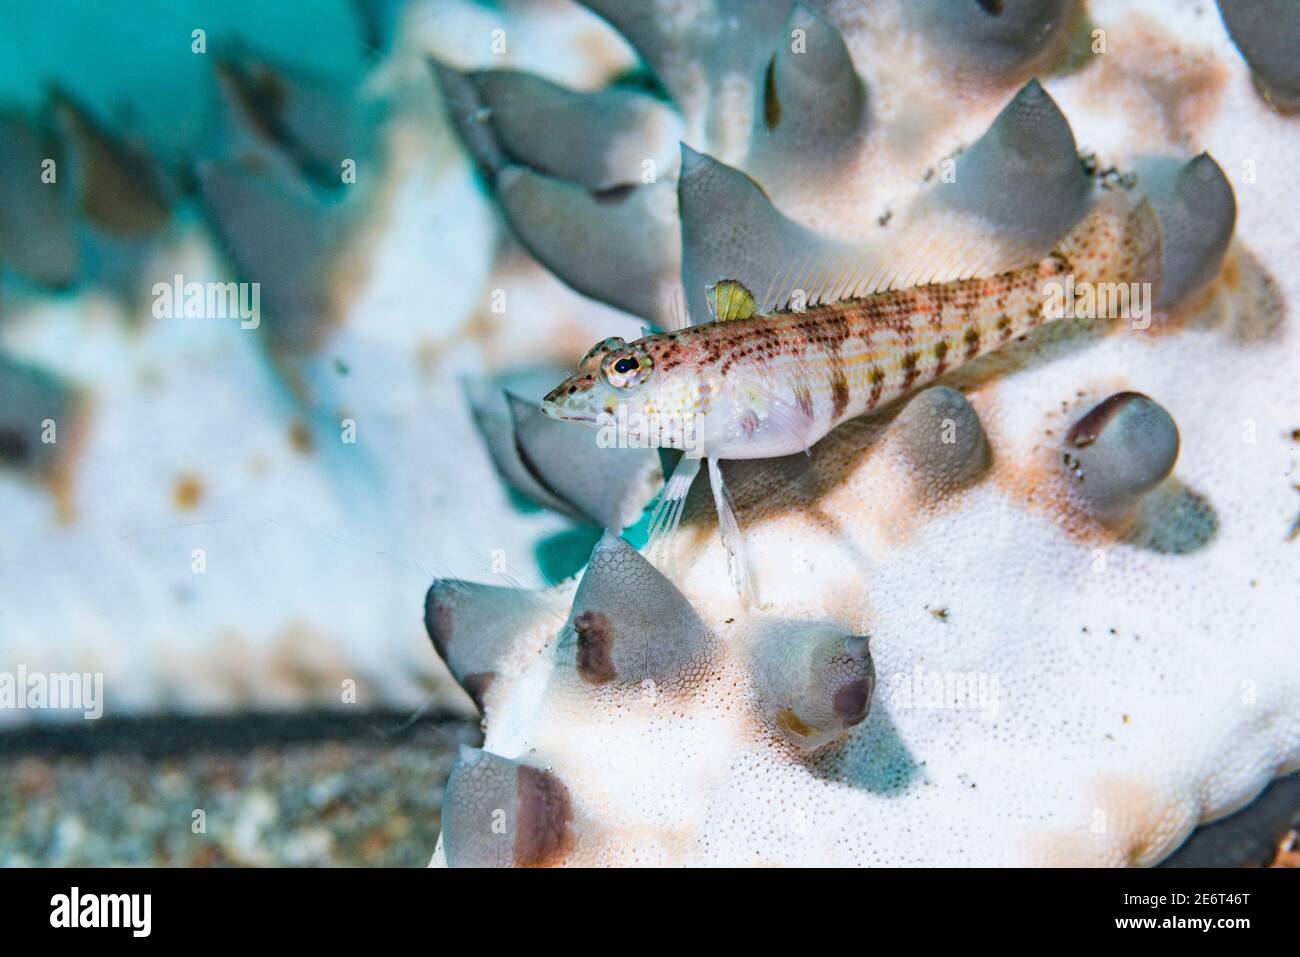 El pez gordo de Snyder [Parapercis snyderi] encaramado en un pez estrellada [Protoreaster nodosus]. Estrecho de Lembeh, Sulawesi del Norte, Indonesia. Foto de stock